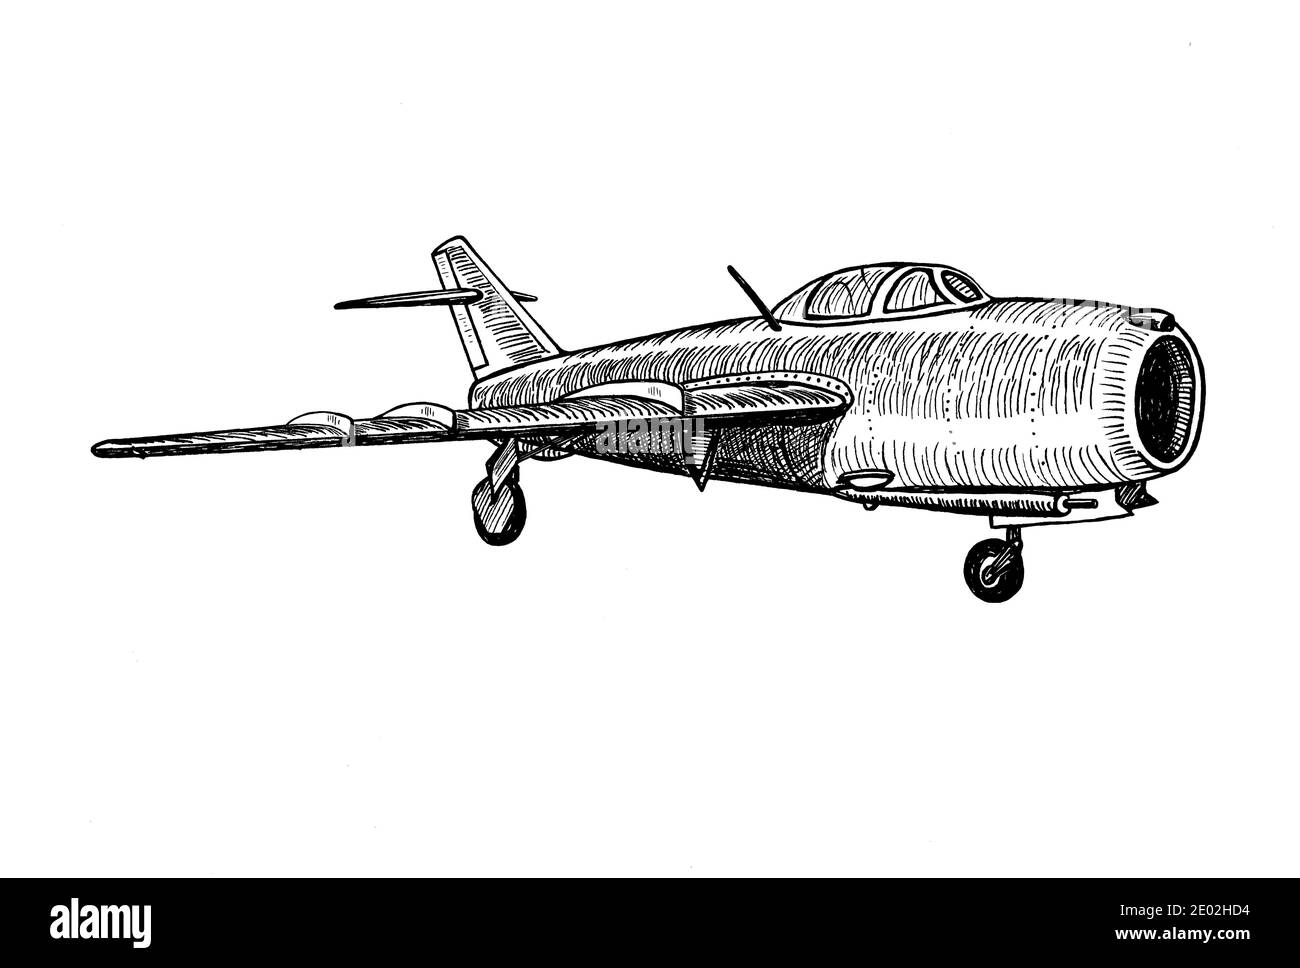 Alto-subsonic jet fighter Aircraft disegno a mano realistic sketch doodle grafica monocromo illustrazione su sfondo bianco (originali, no tracing) Foto Stock